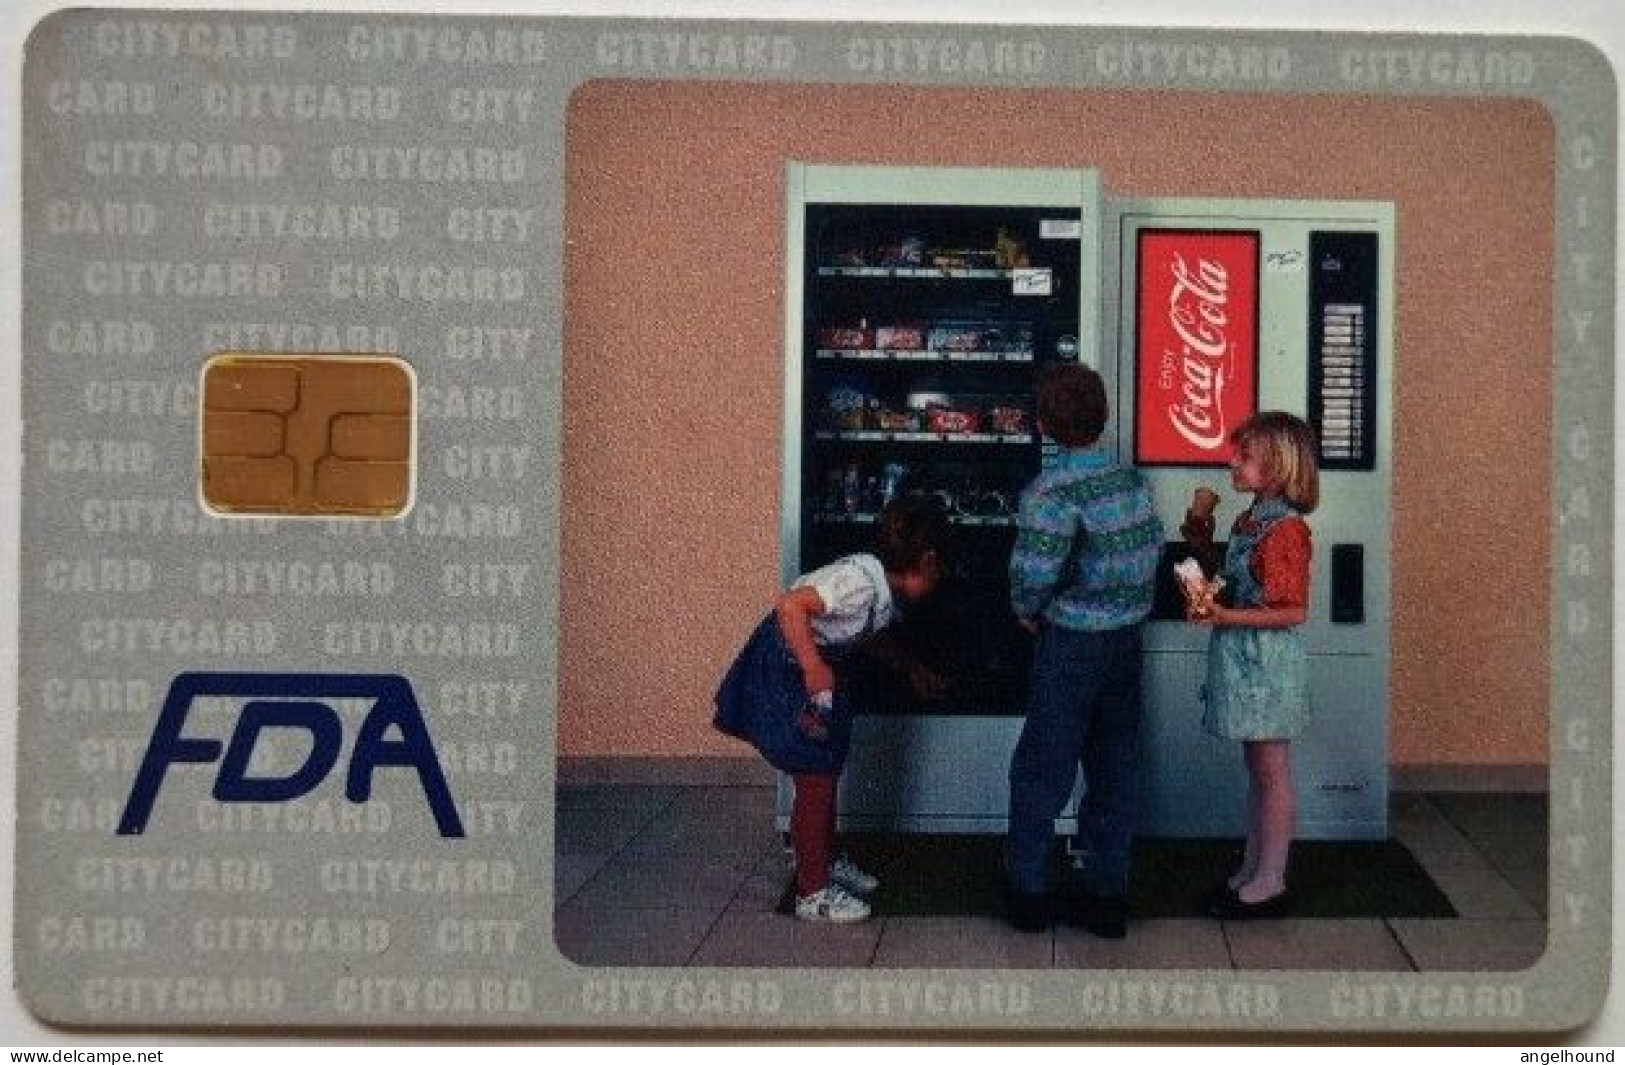 Czech Republic 300 KC FDA  City Card - Coca Cola - Tschechische Rep.